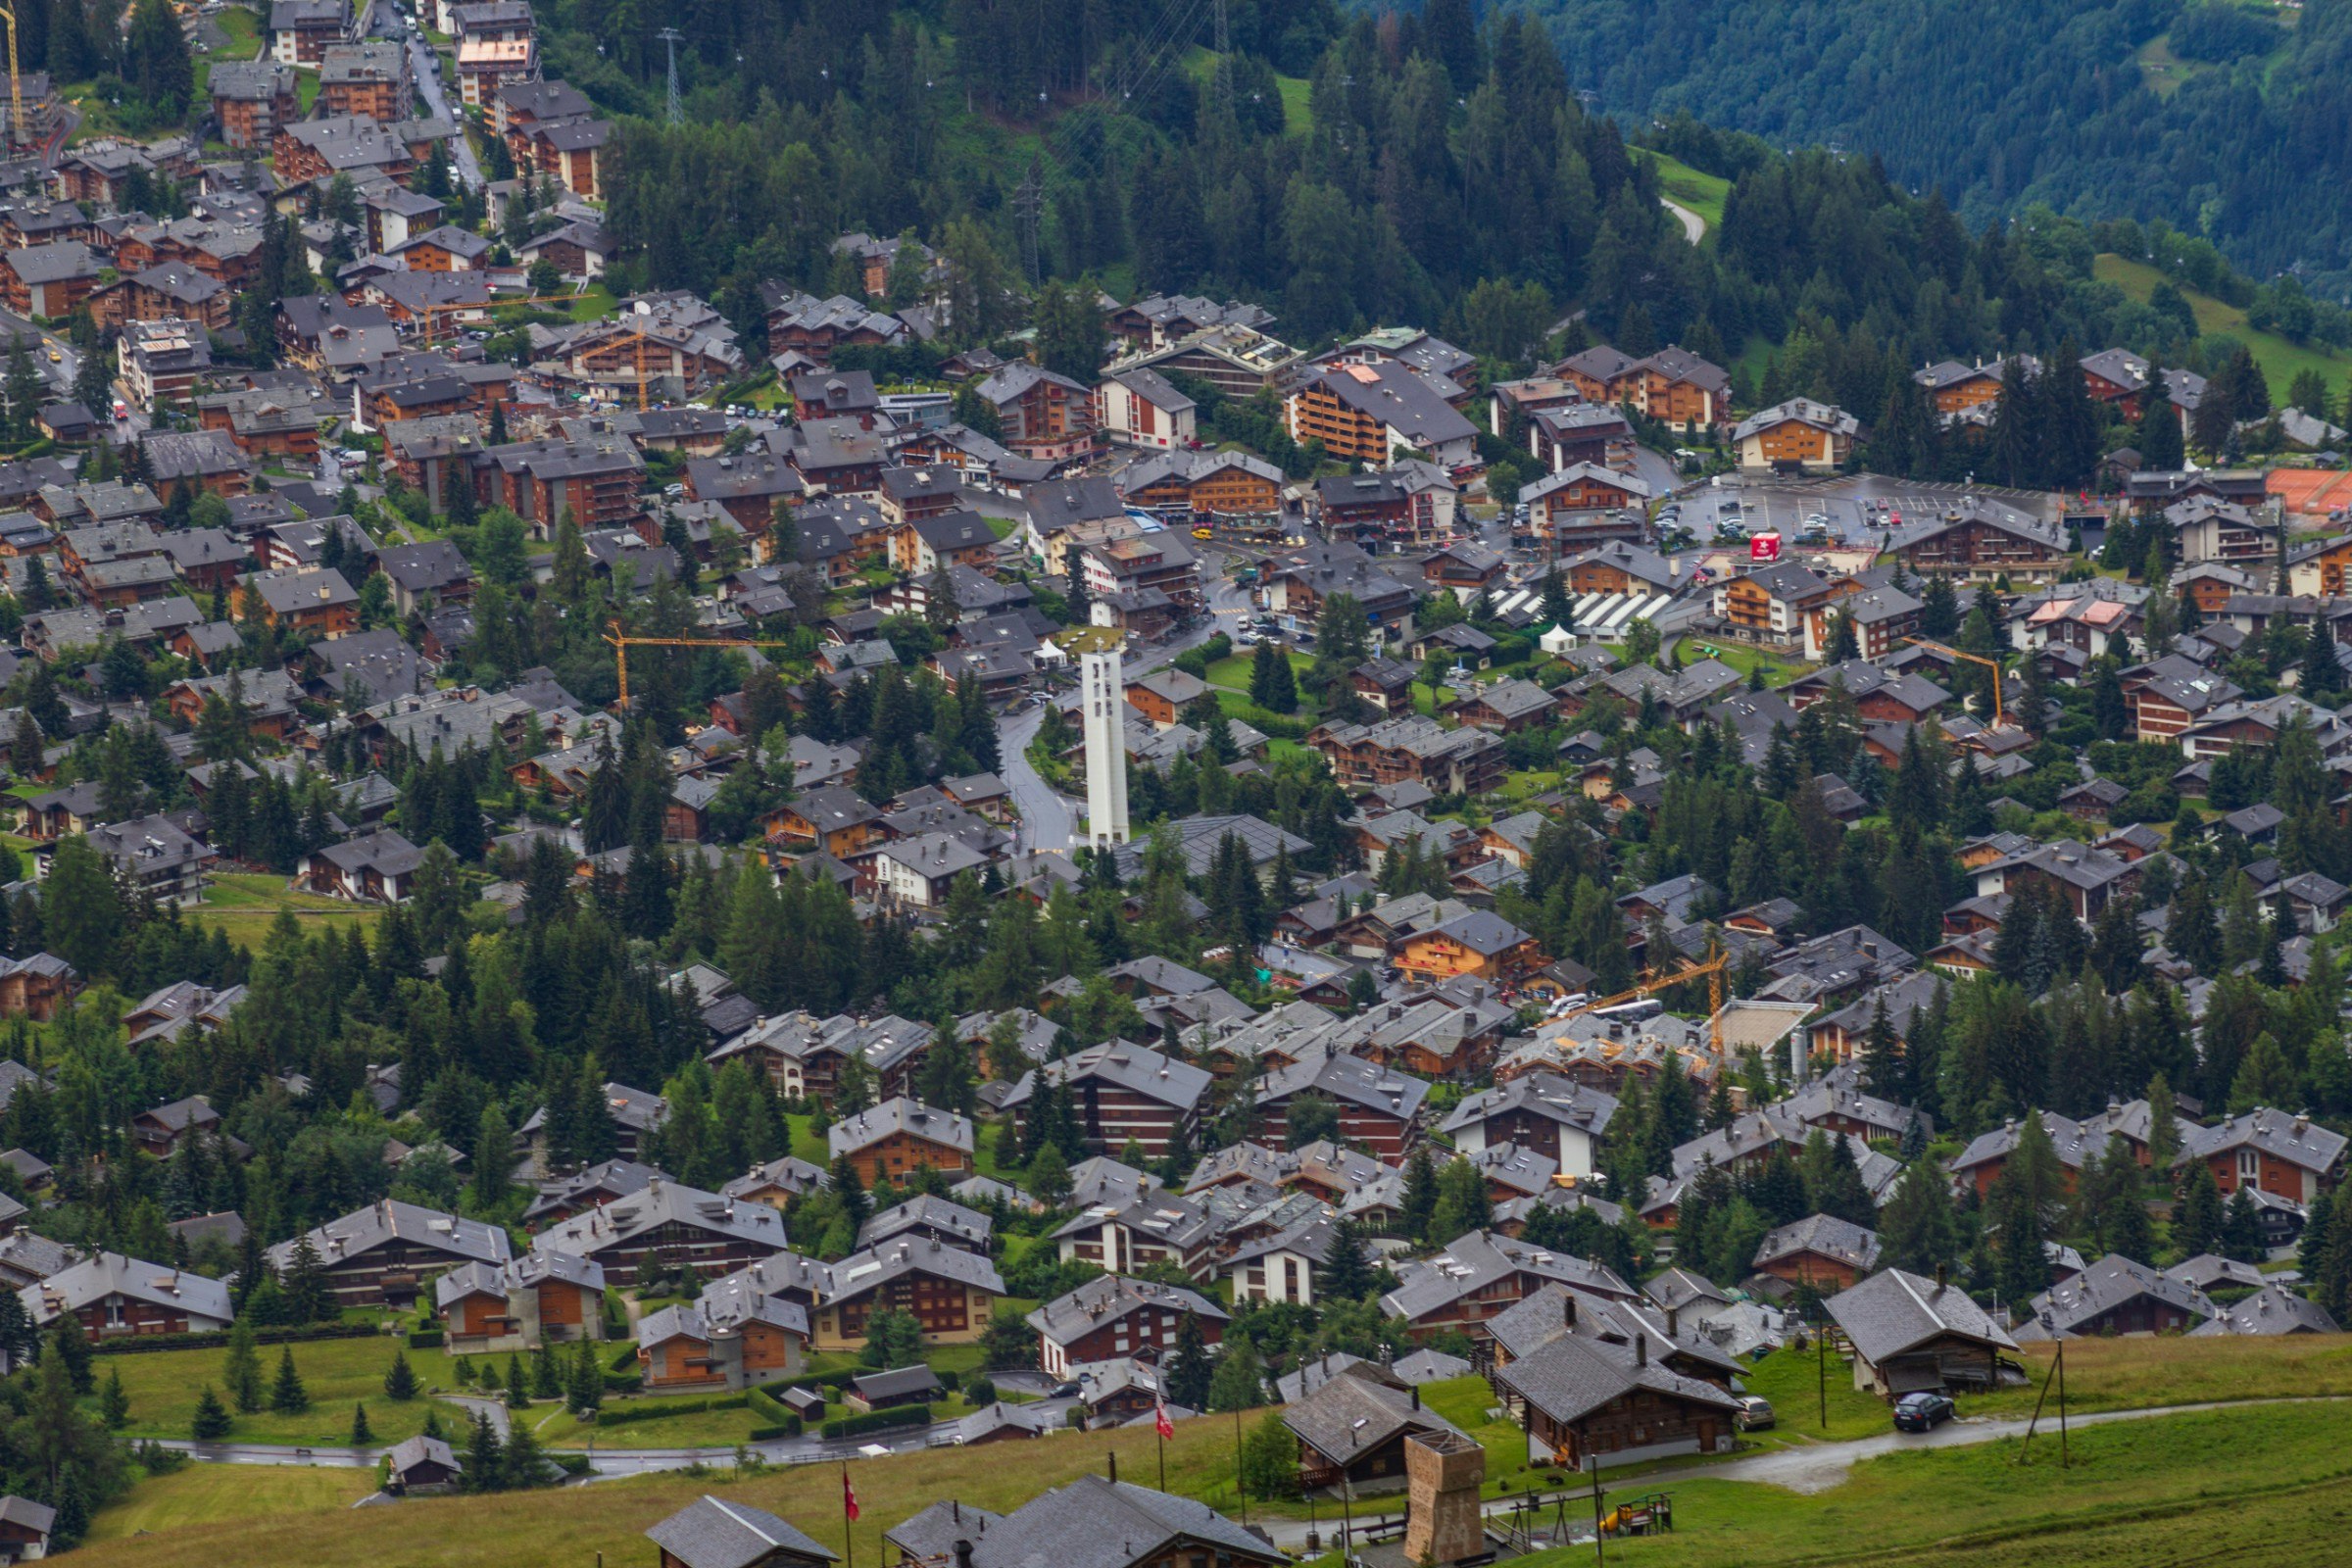 Verbier village in Switzerland from above